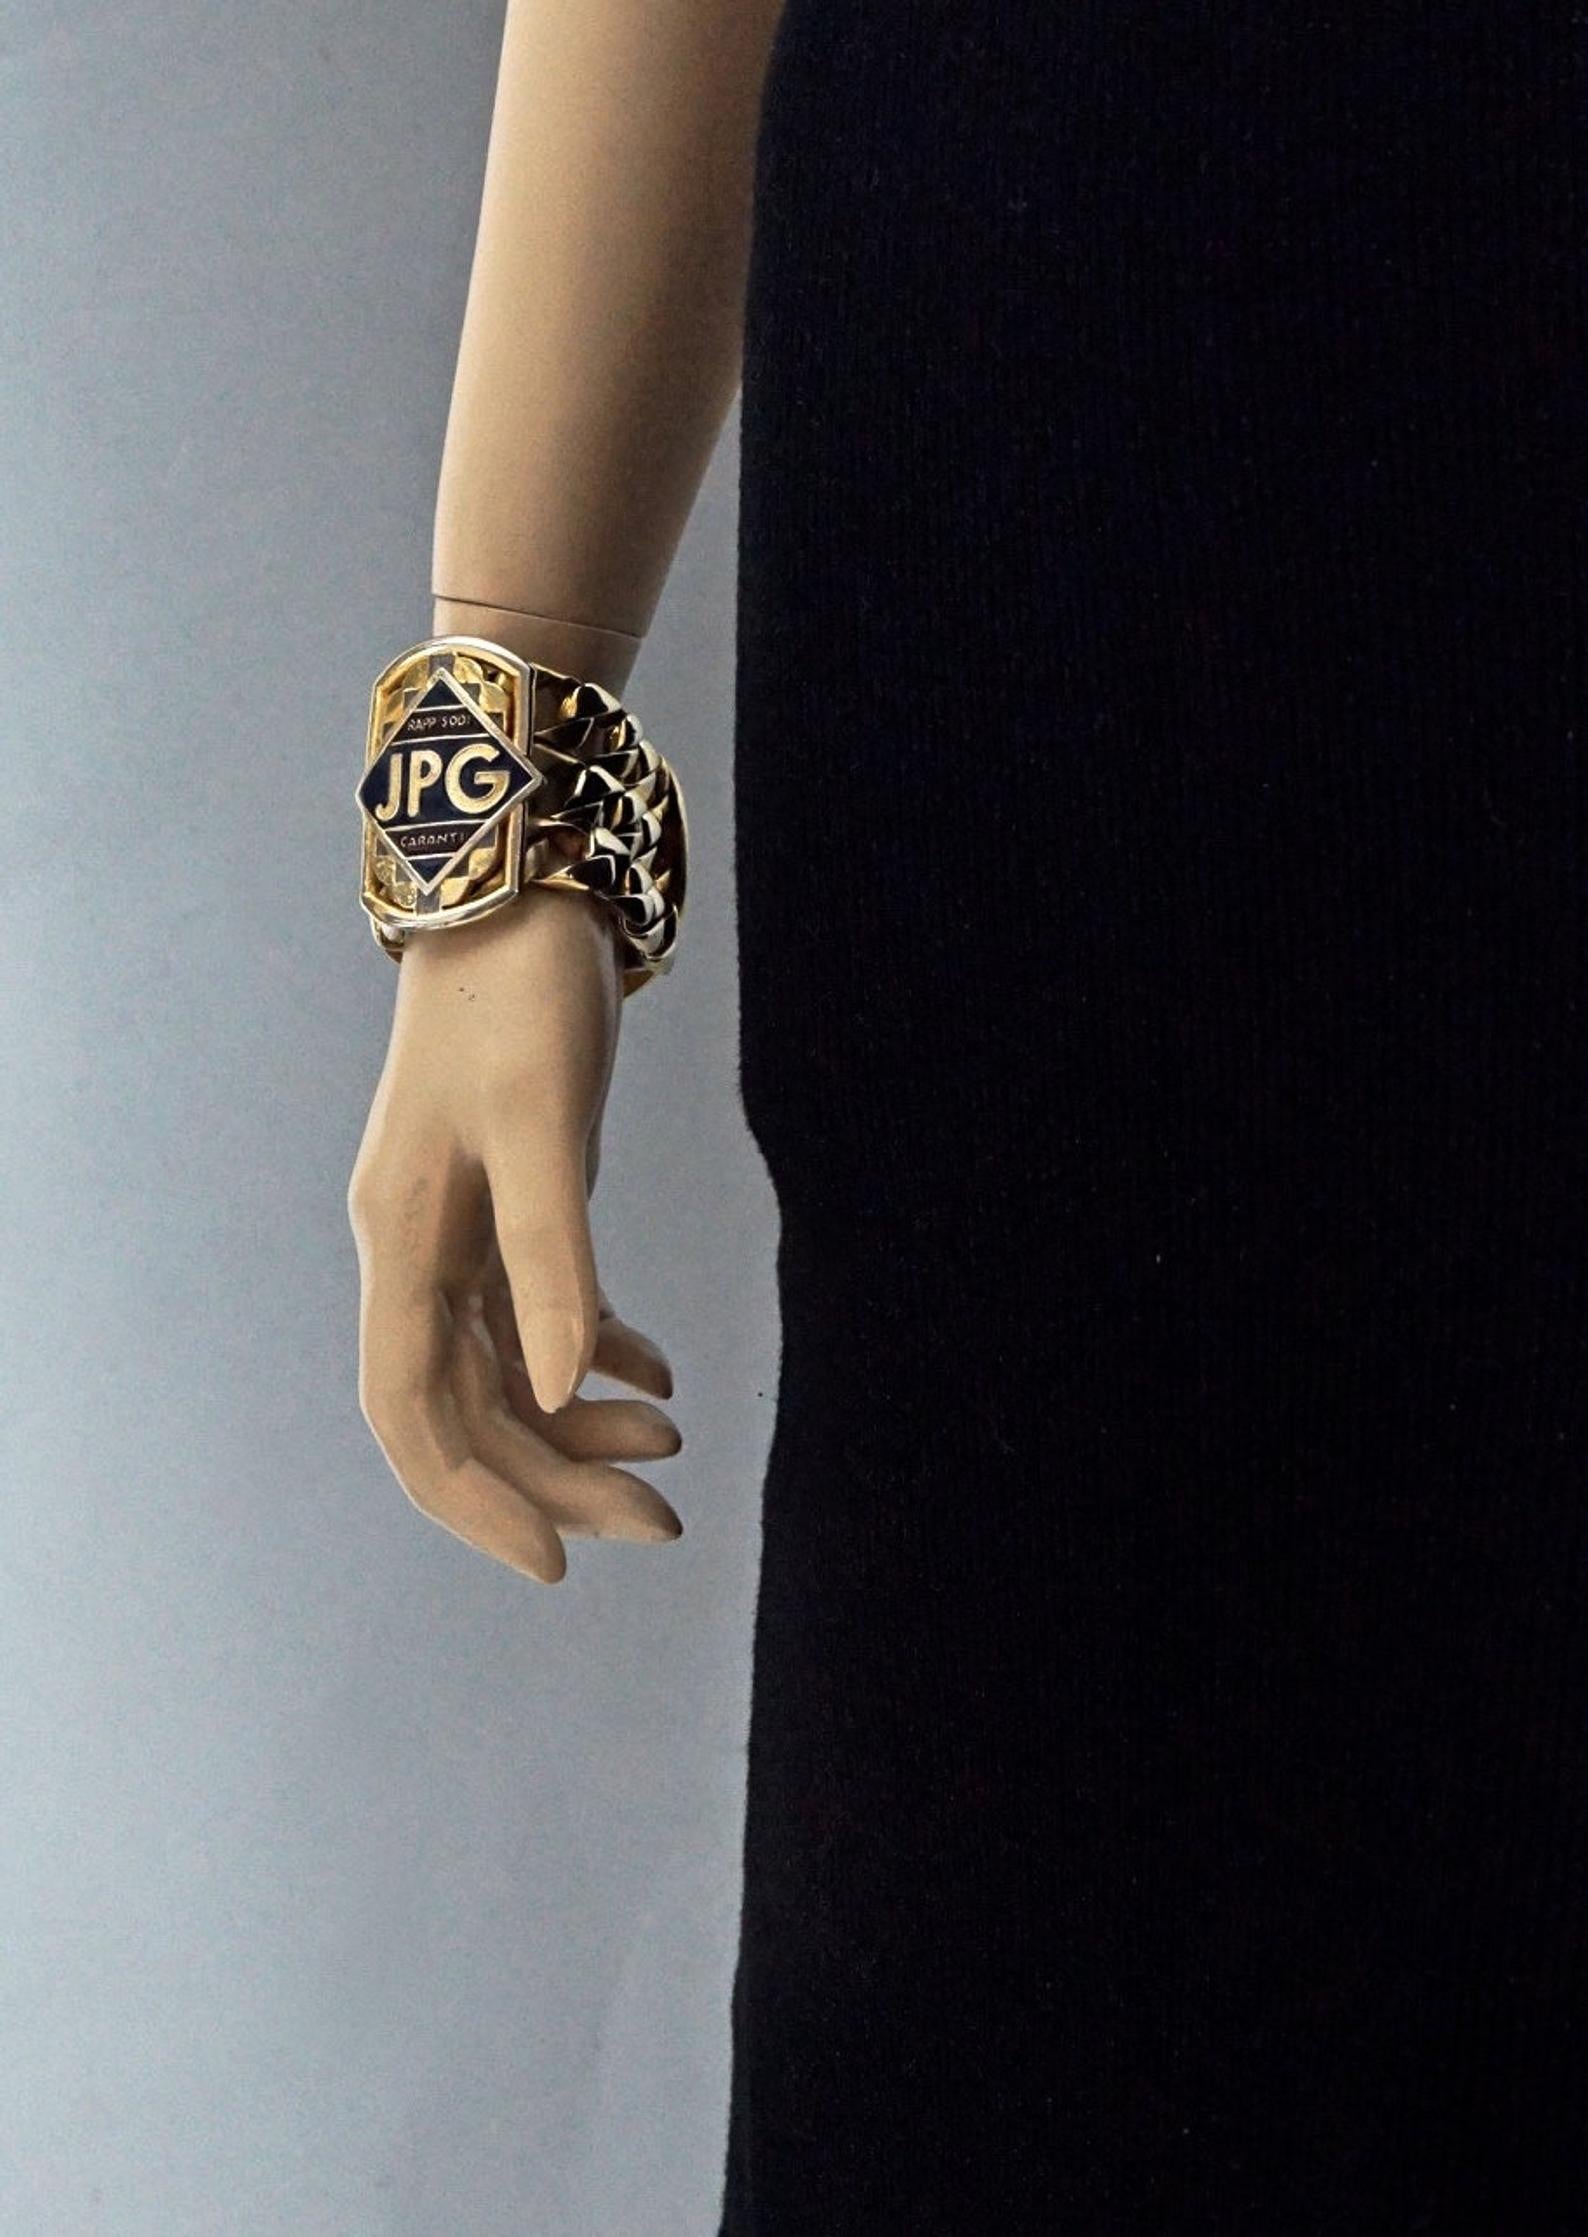 Vintage Jean Paul Gaultier JPG RAPPSODI GARANTI Enamel Chain Cuff Bracelet 4